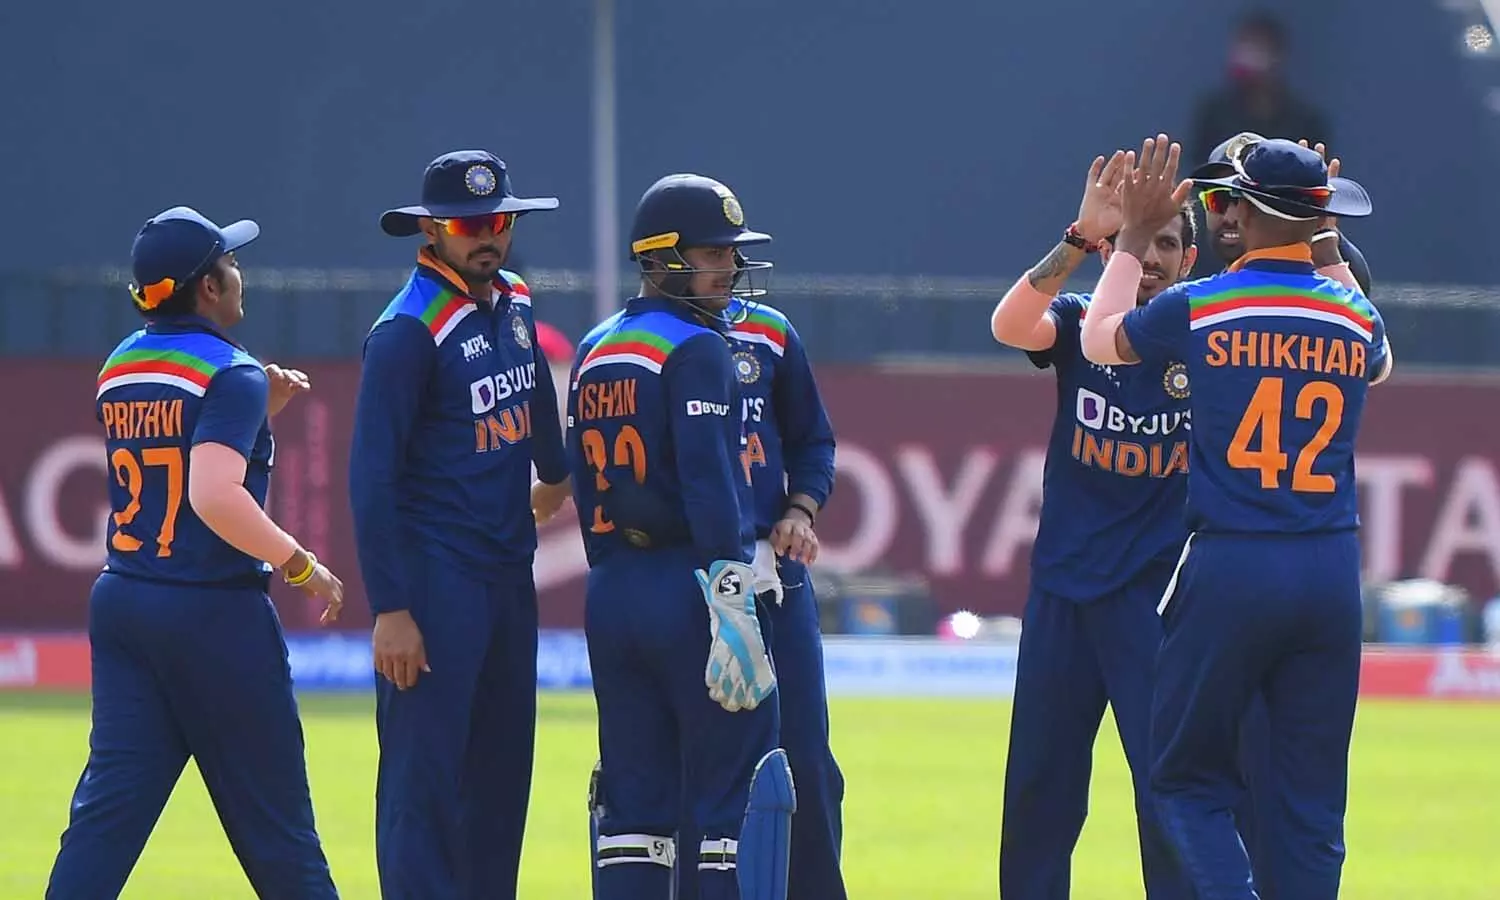 IND vs SL 2nd ODI Live: टीम इंडिया की शानदार जीत, सूर्यकुमार-दीपक चाहर का चला बल्ला